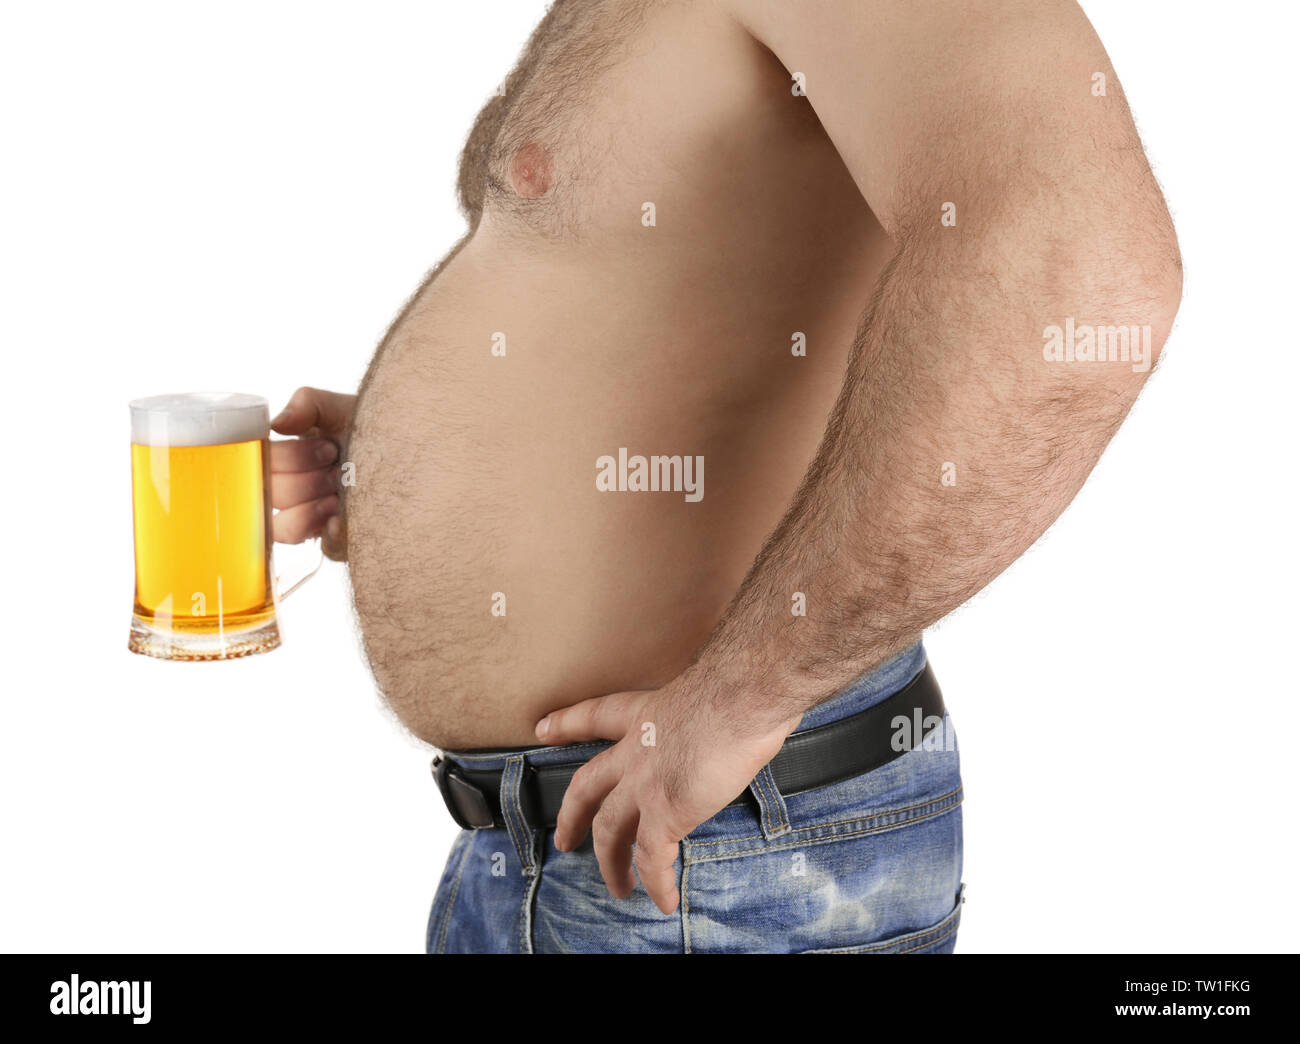 Mann mit großen Bauch holding Glas Bier auf weißem Hintergrund Stockfoto